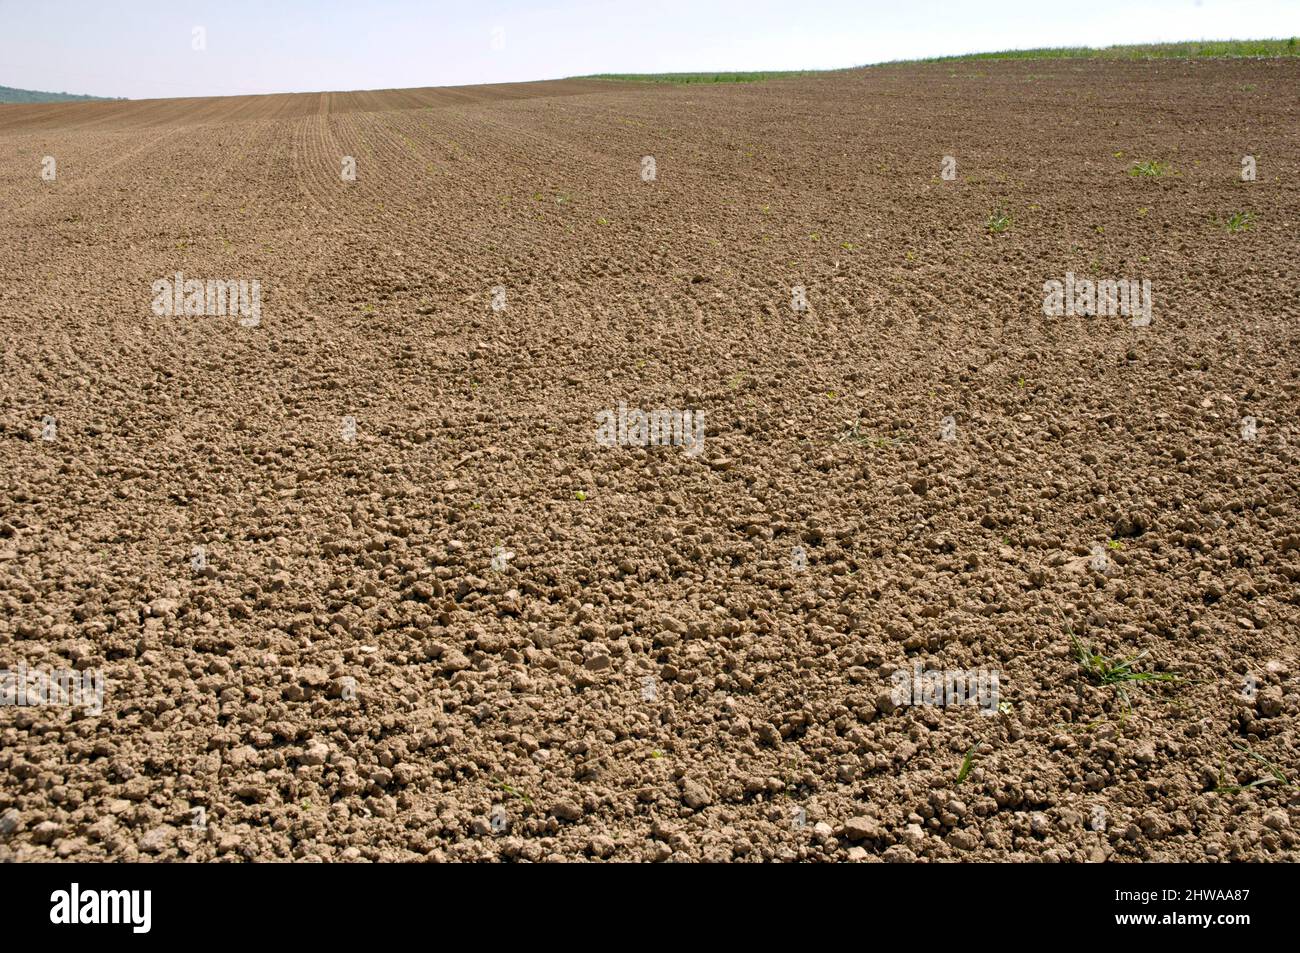 farm land, Germany Stock Photo